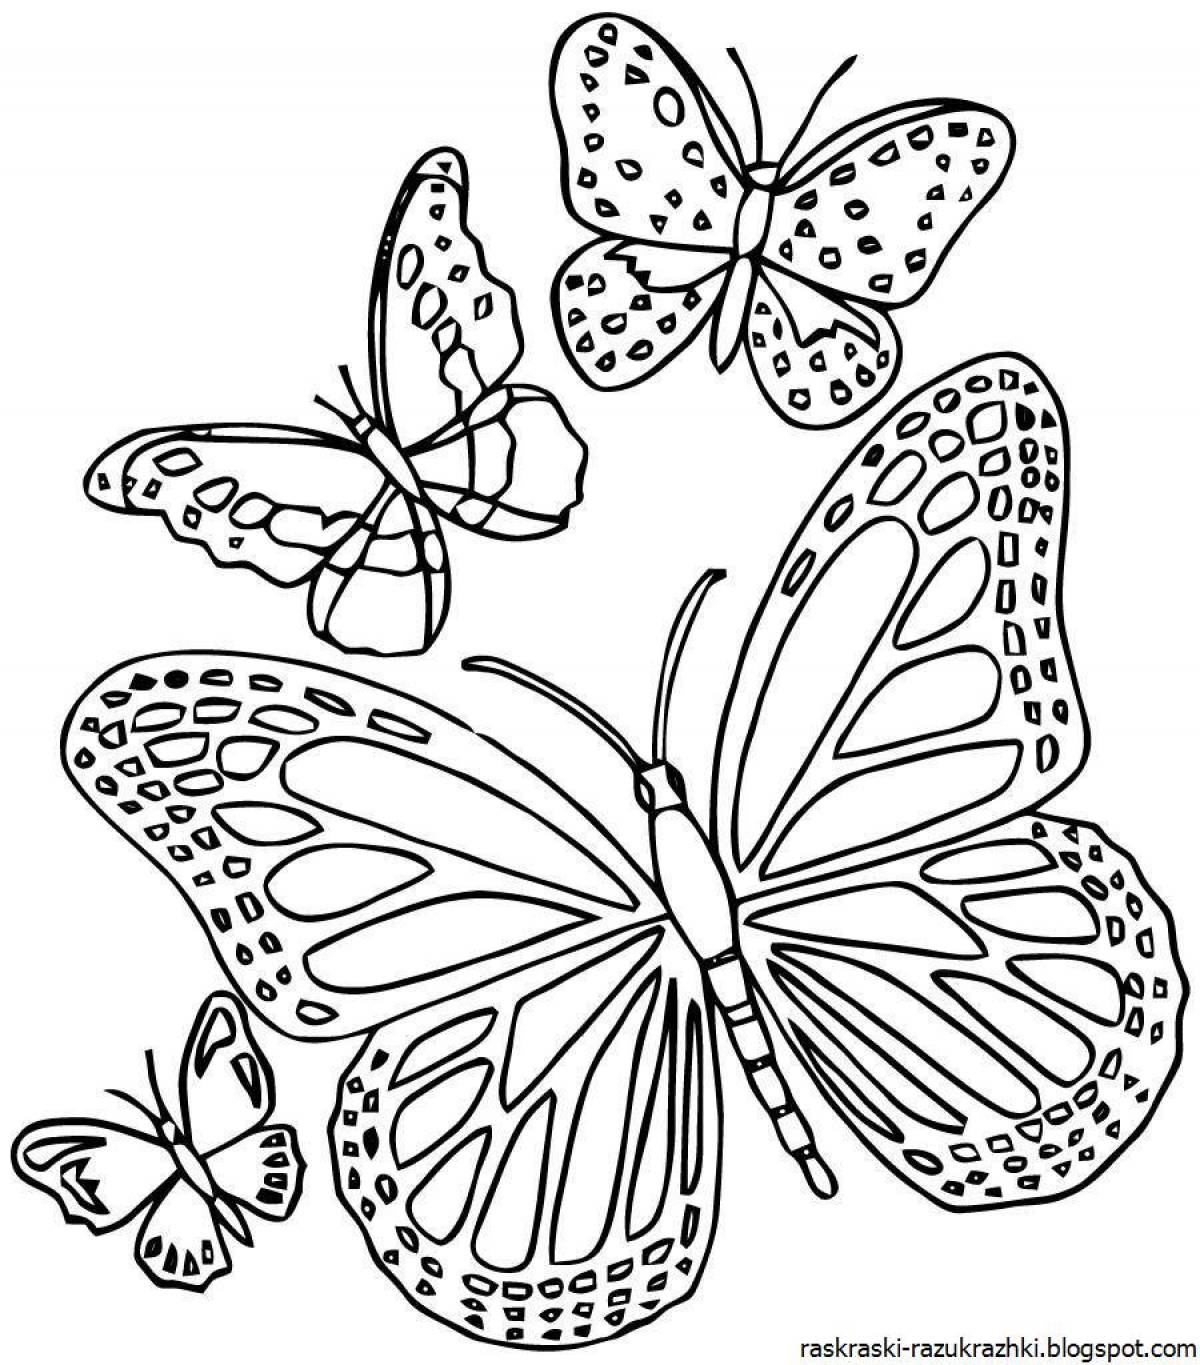 Fancy butterfly coloring